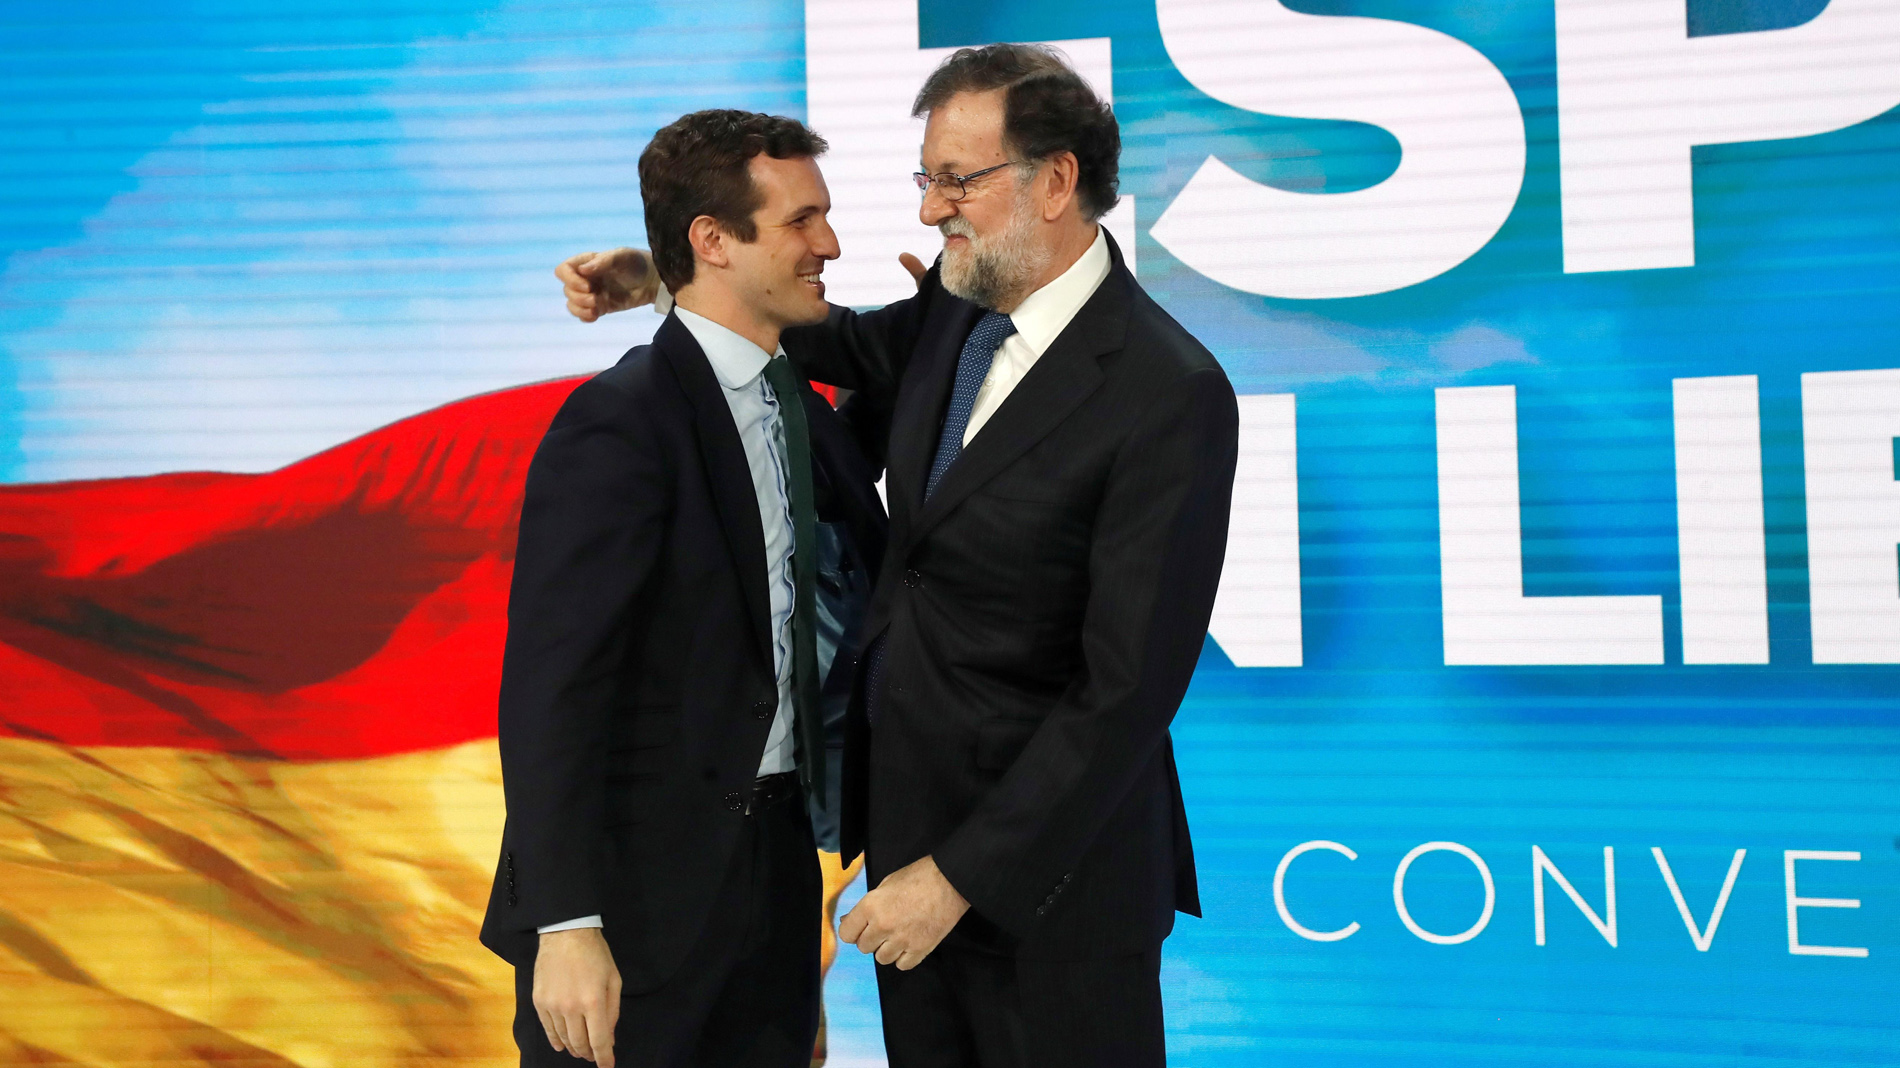 Ir al Video Rajoy reaparece para reivindicar el PP contra "doctrinarios y sectarios"